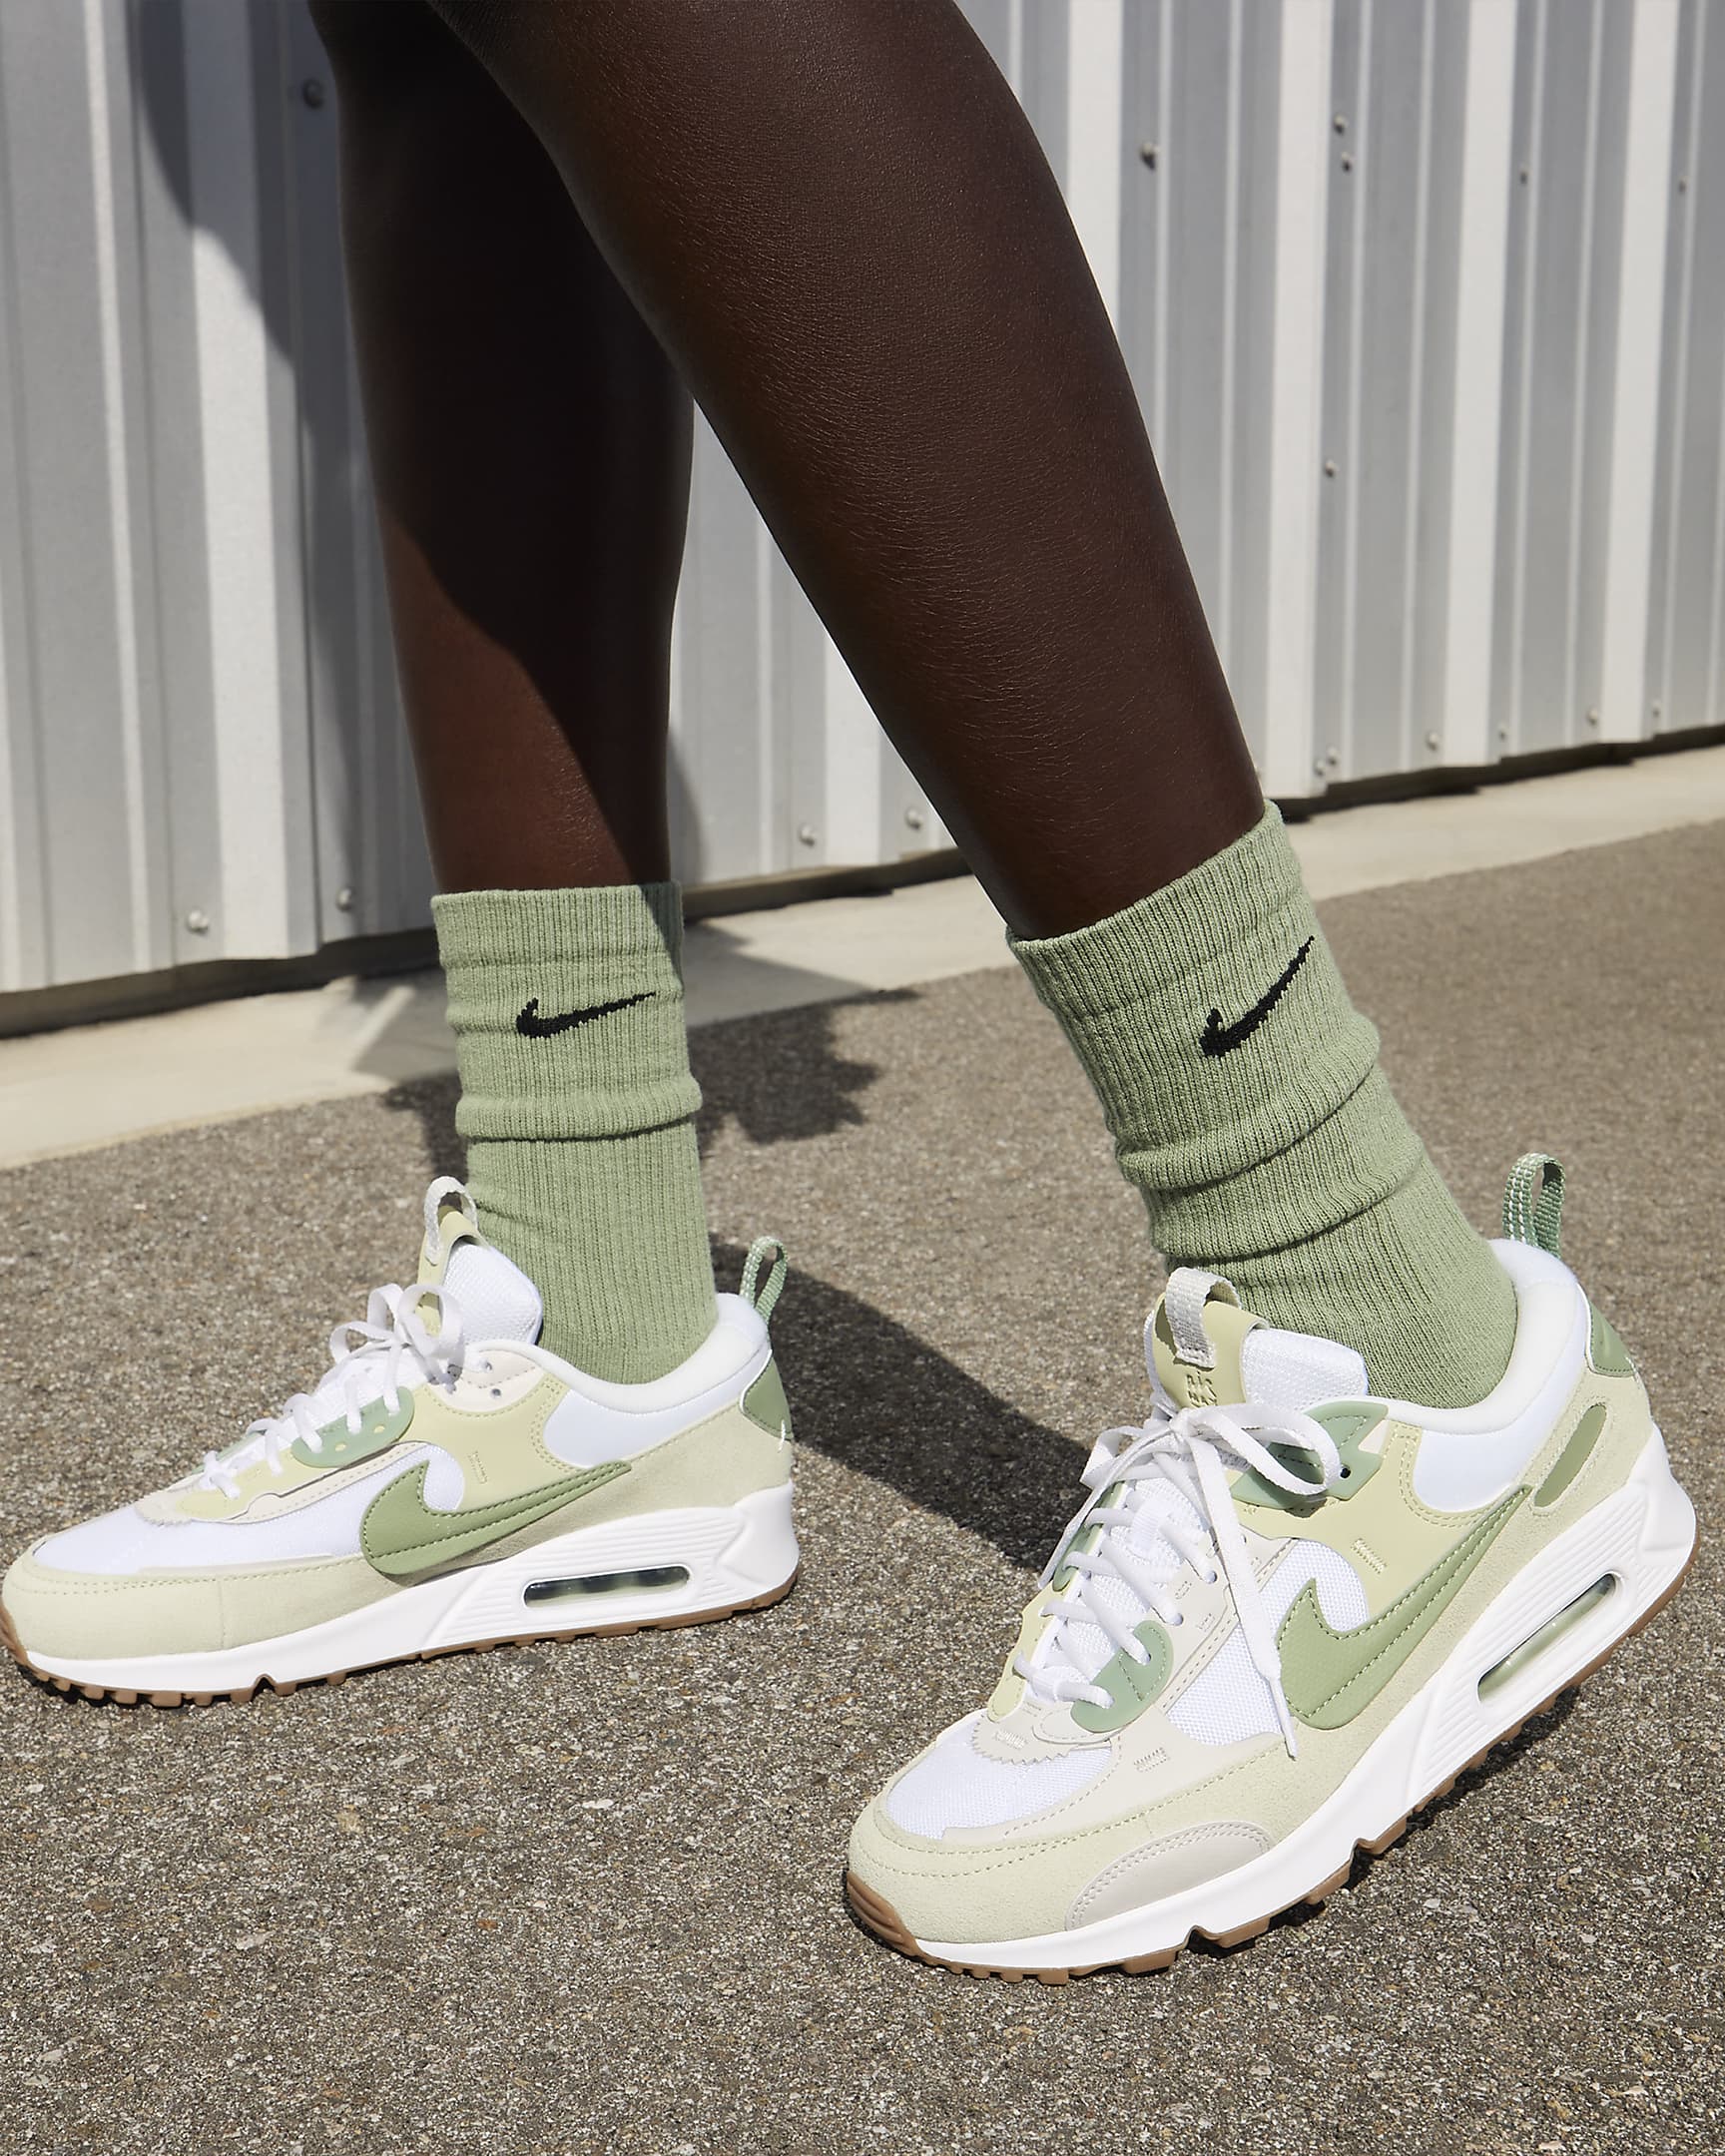 Nike Air Max 90 Futura Women's Shoes - White/Olive Aura/Gum Medium Brown/Oil Green